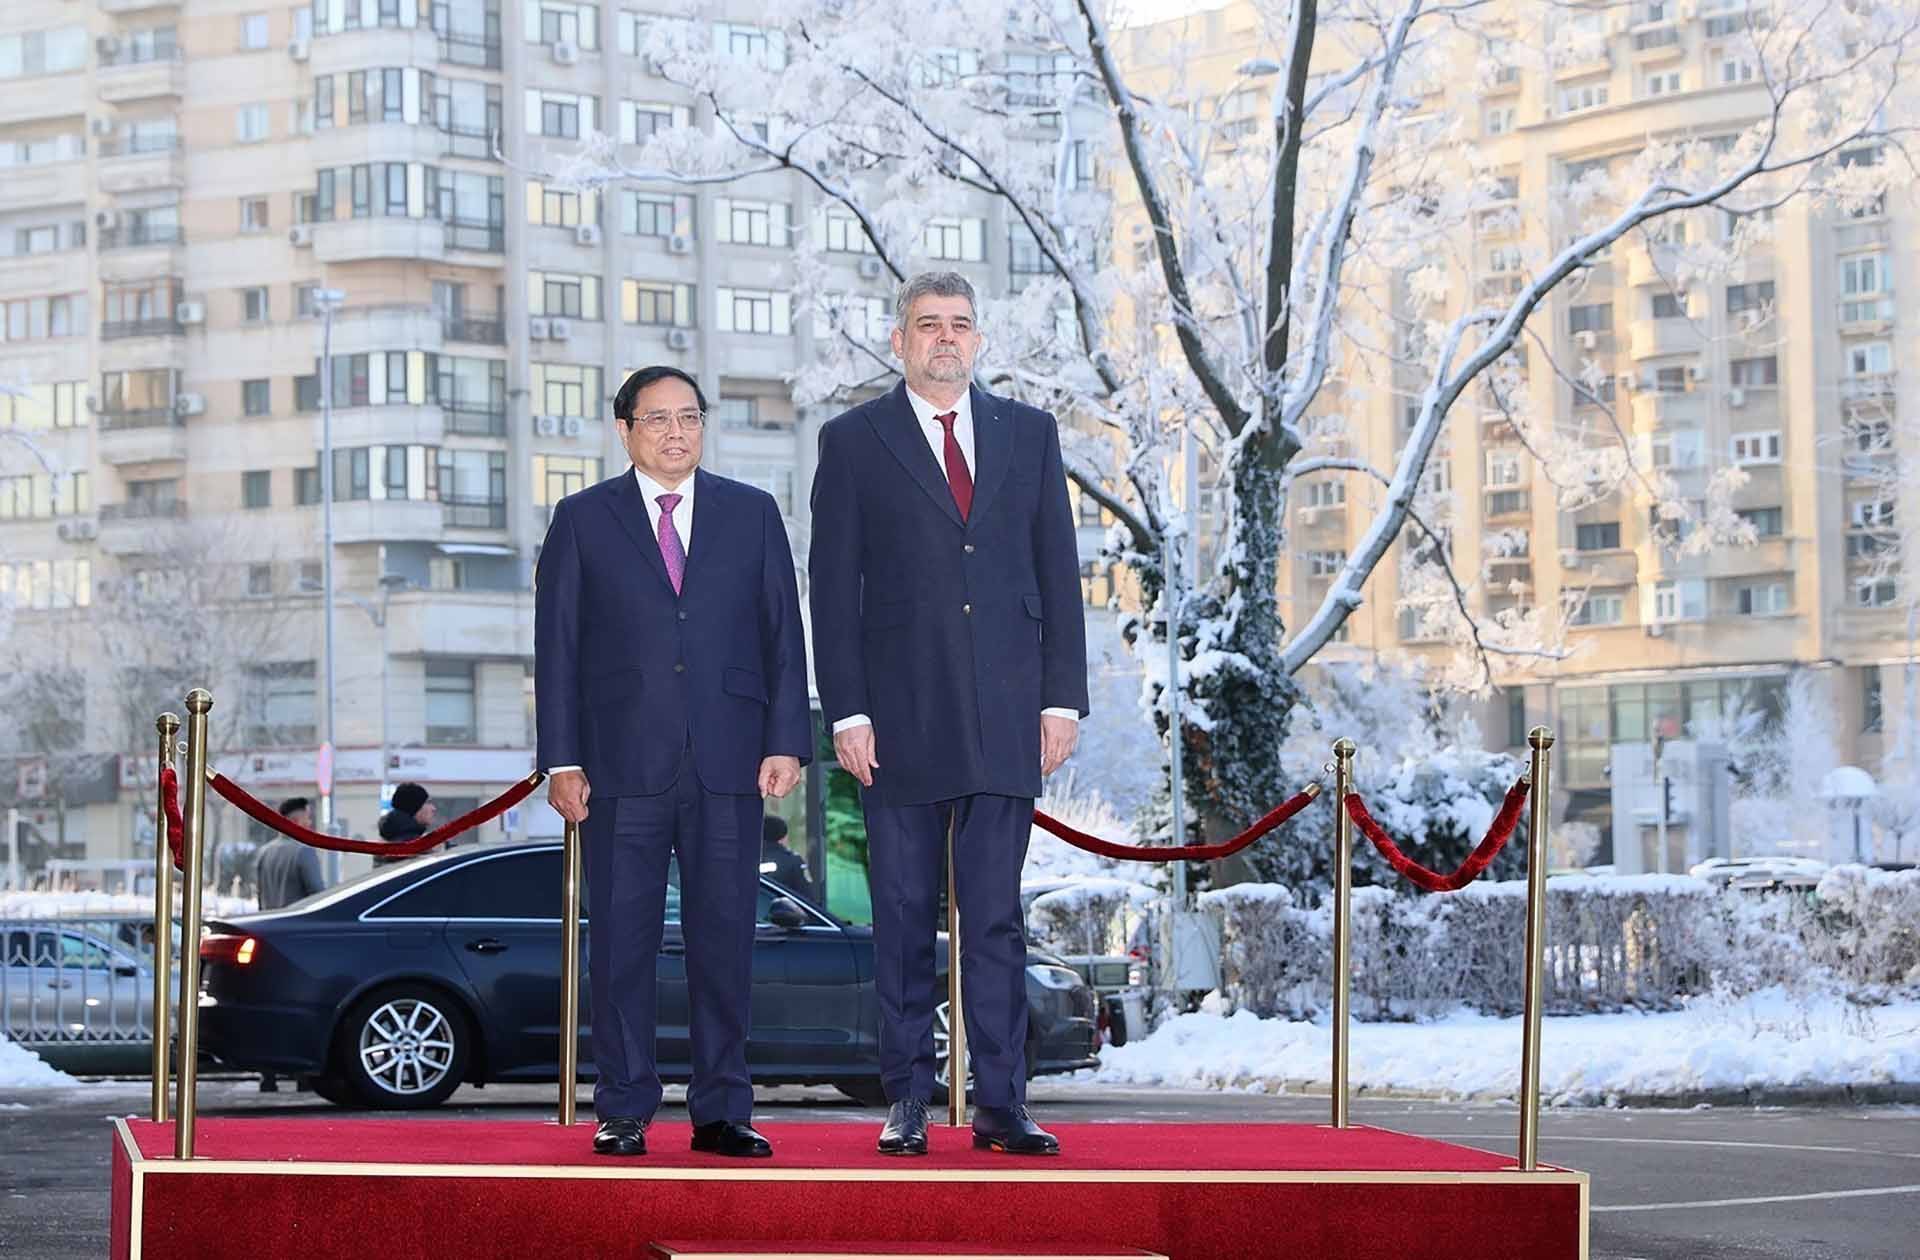 Thủ tướng Phạm Minh Chính và Thủ tướng Romania Ion-Marcel Ciolacu nghe quân nhạc cử Quốc thiều hai nước. (Nguồn: TTXVN)